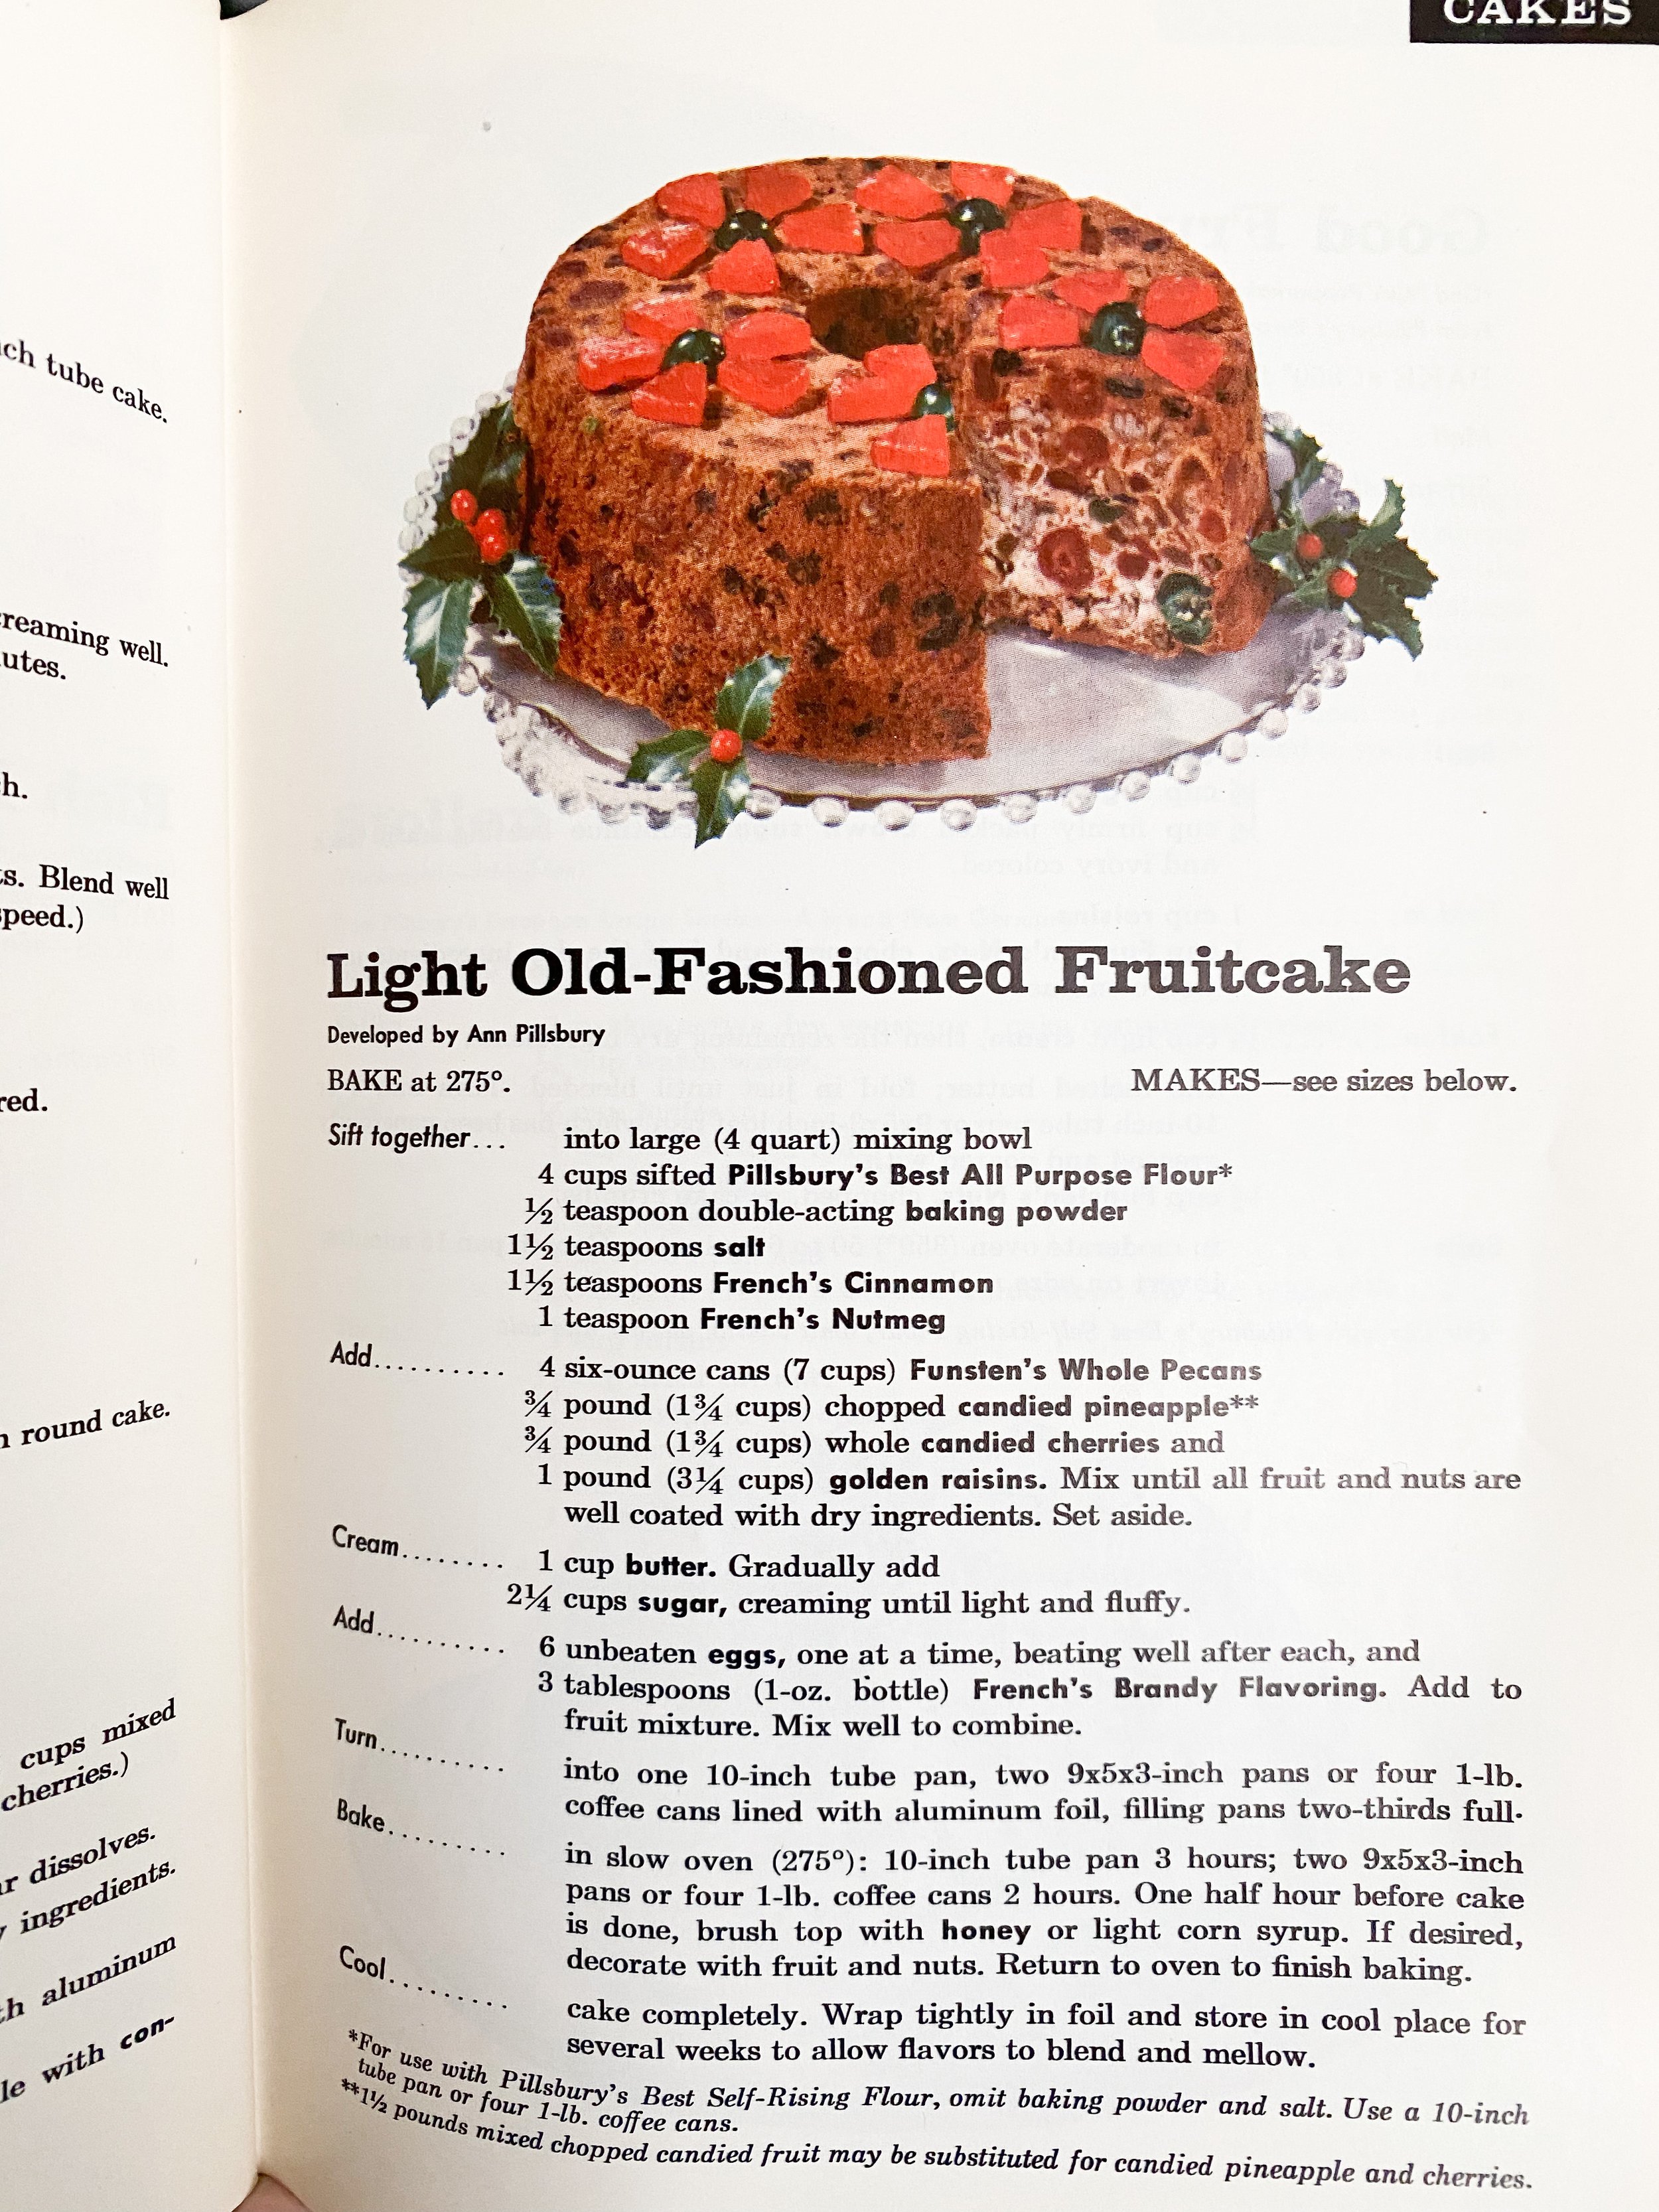 Light old-fashioned fruitcake